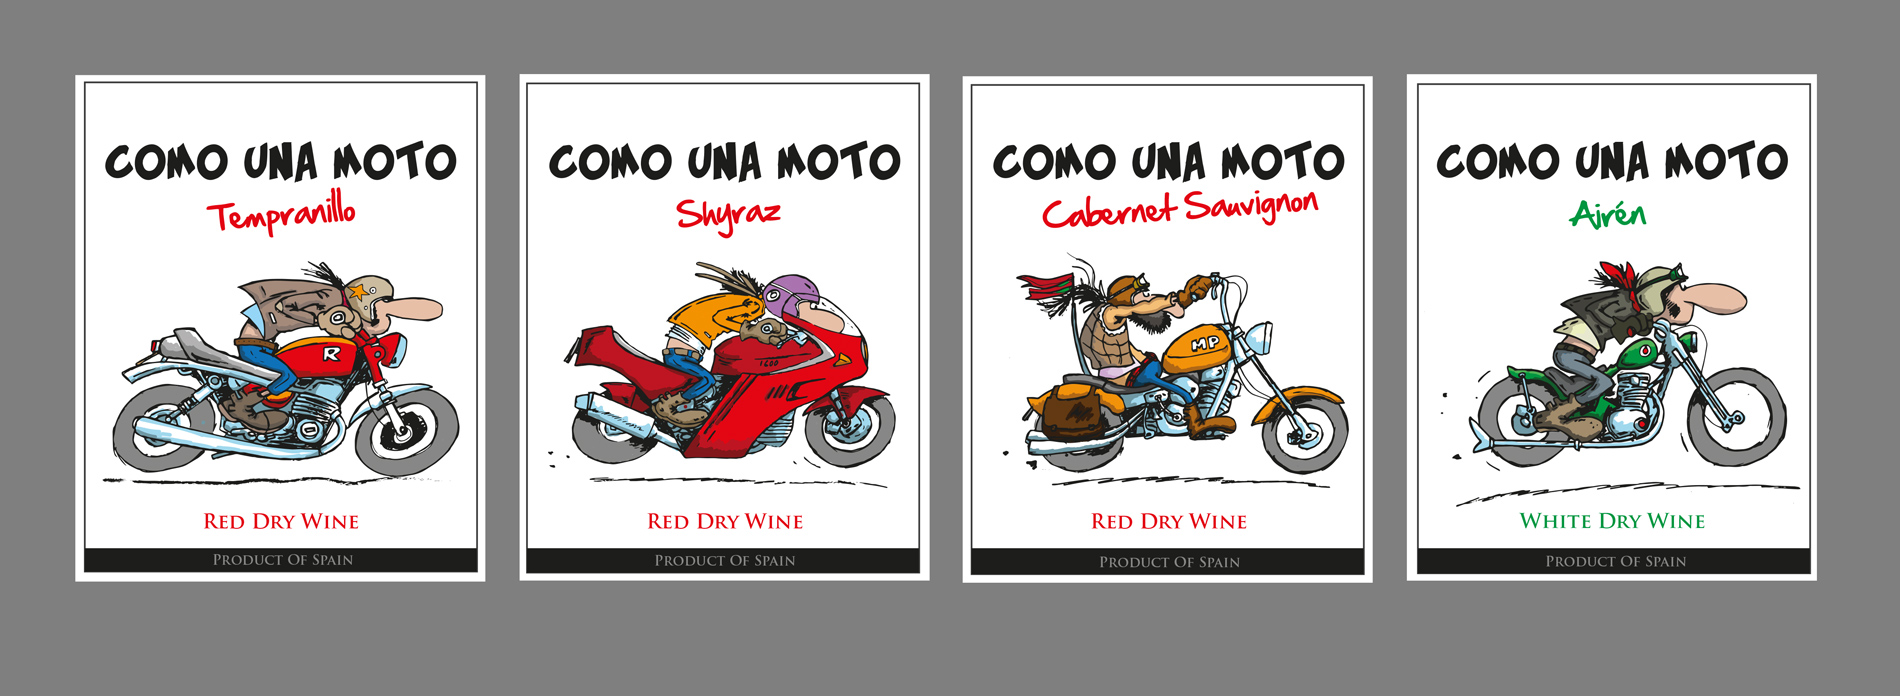 Diseño gráfico y creativo de etiquetas y packaging de vino para COMO UNA MOTO